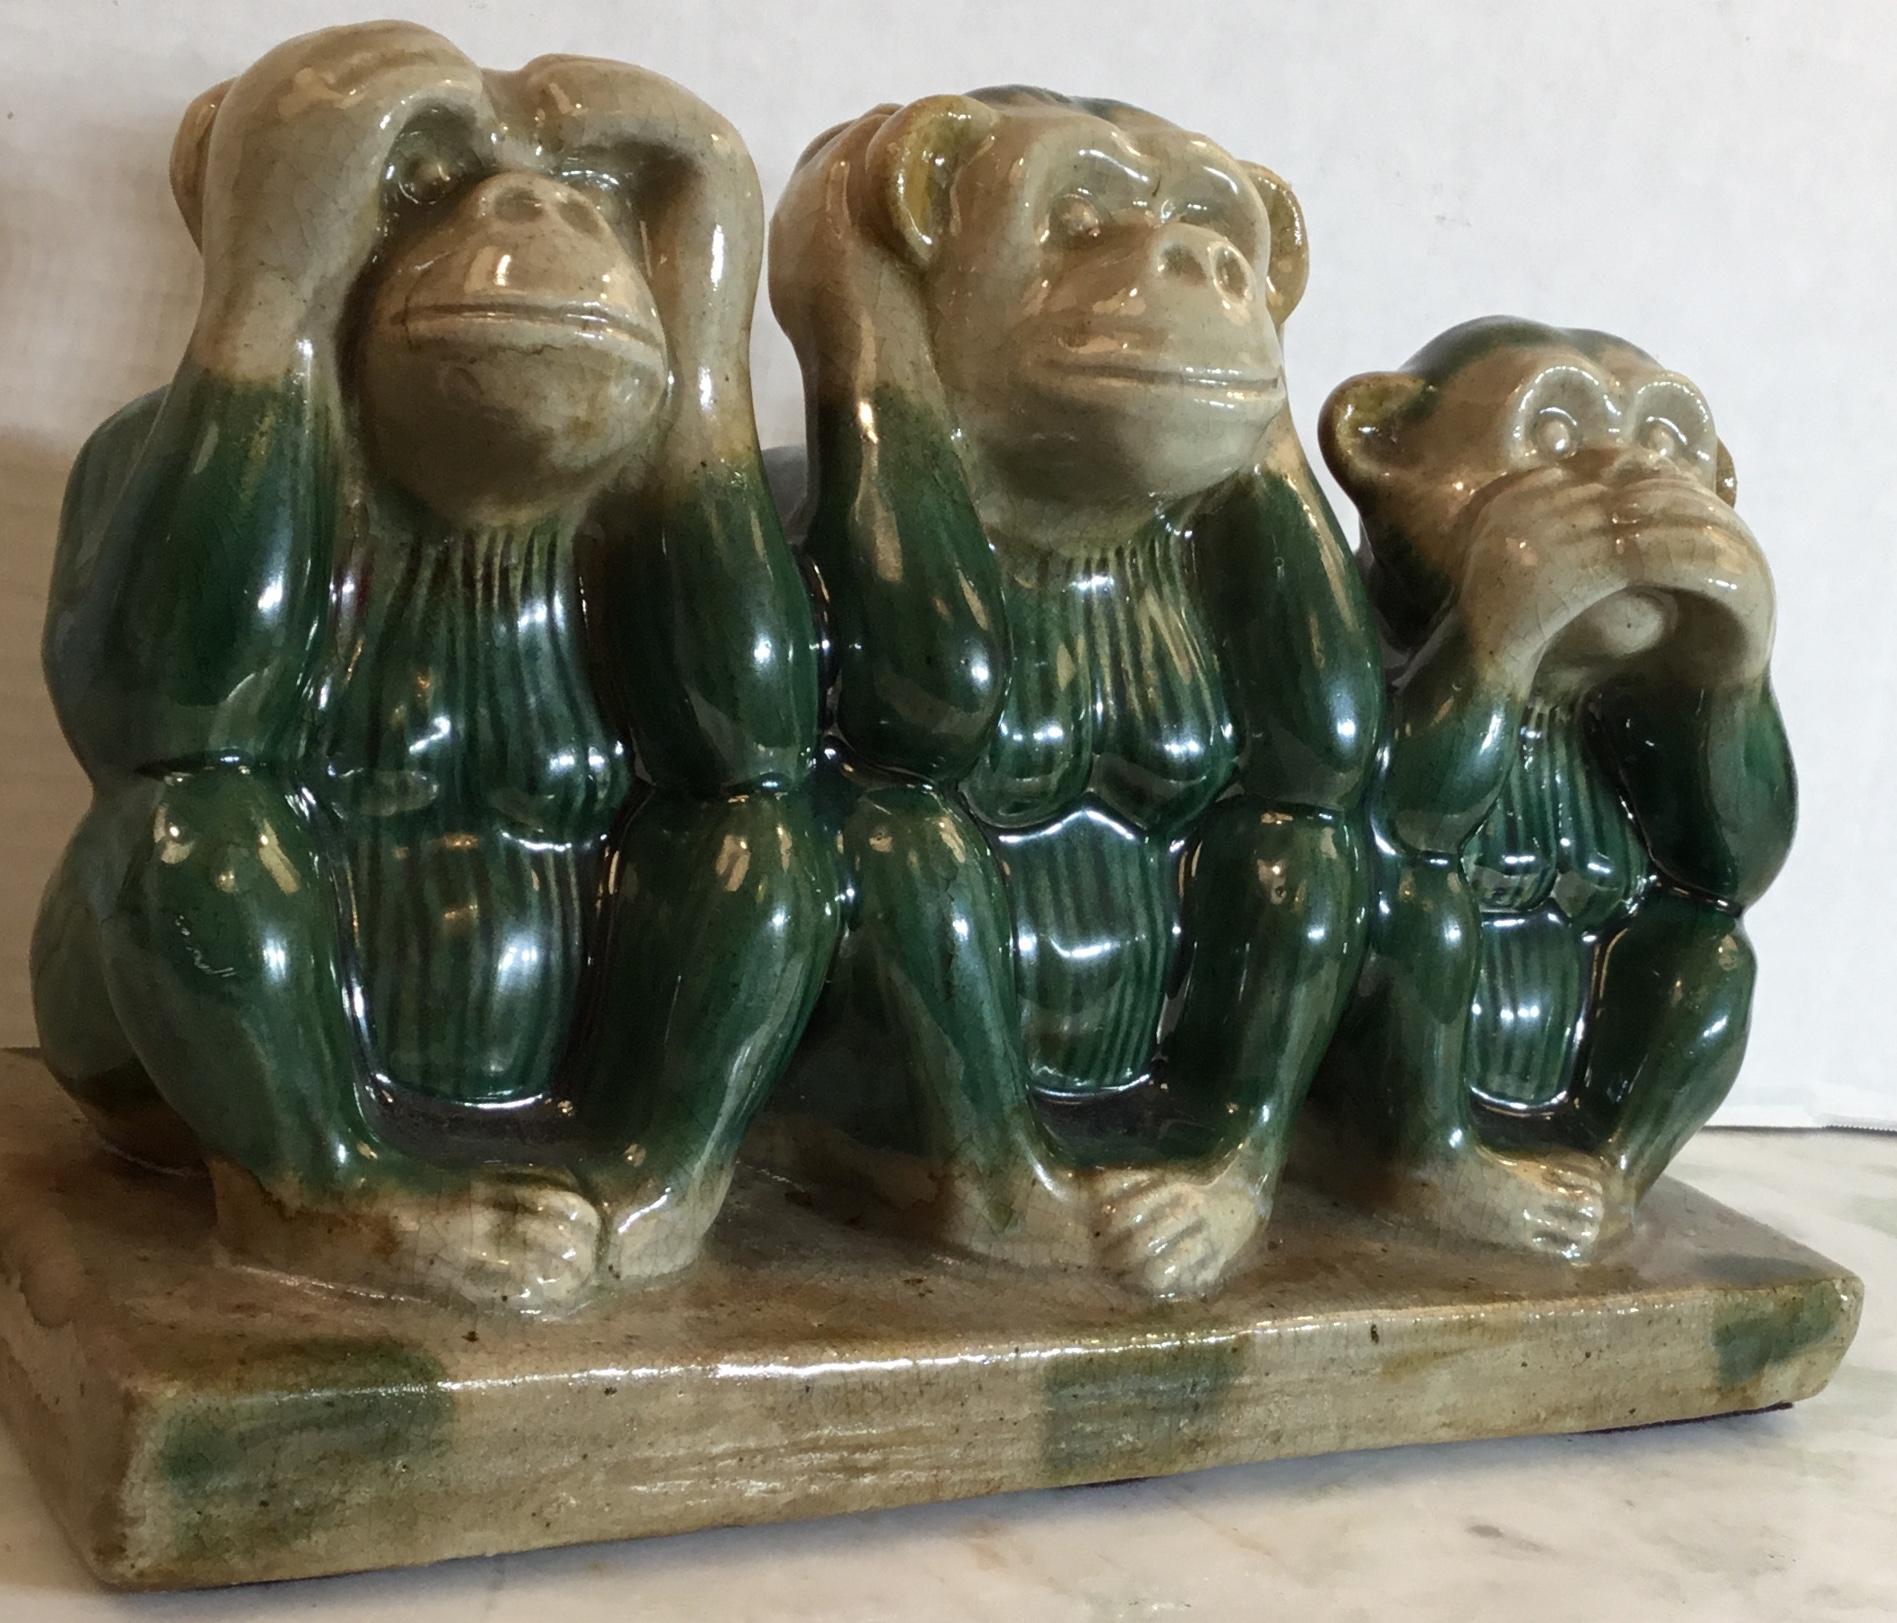 vintage ceramic monkey